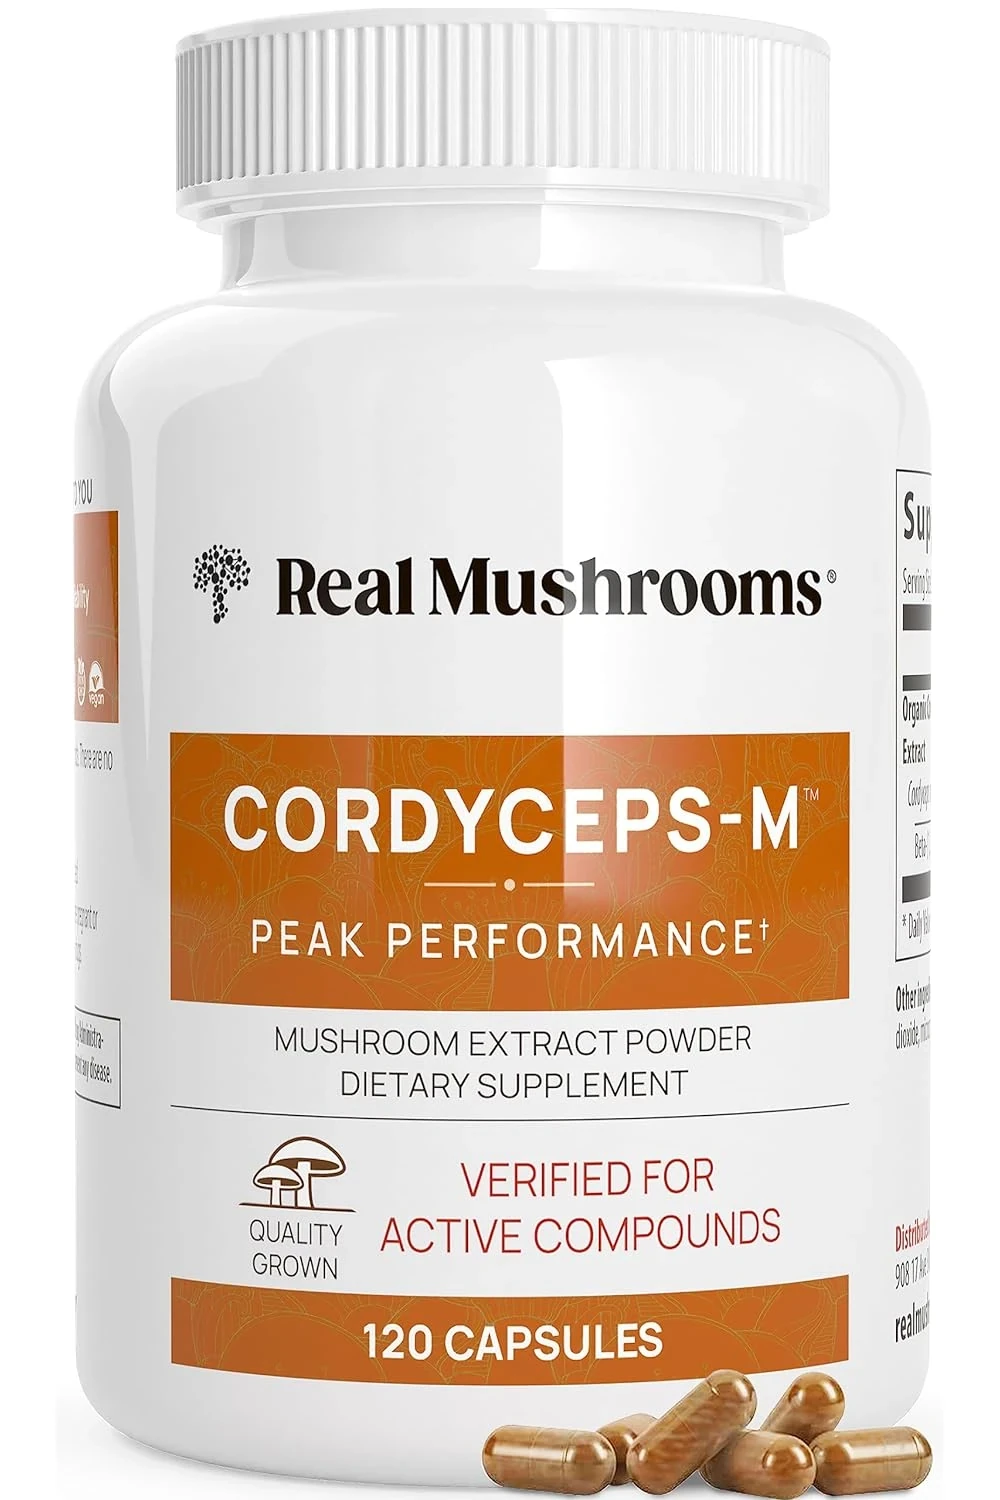 Organic Cordyceps Extract Capsules